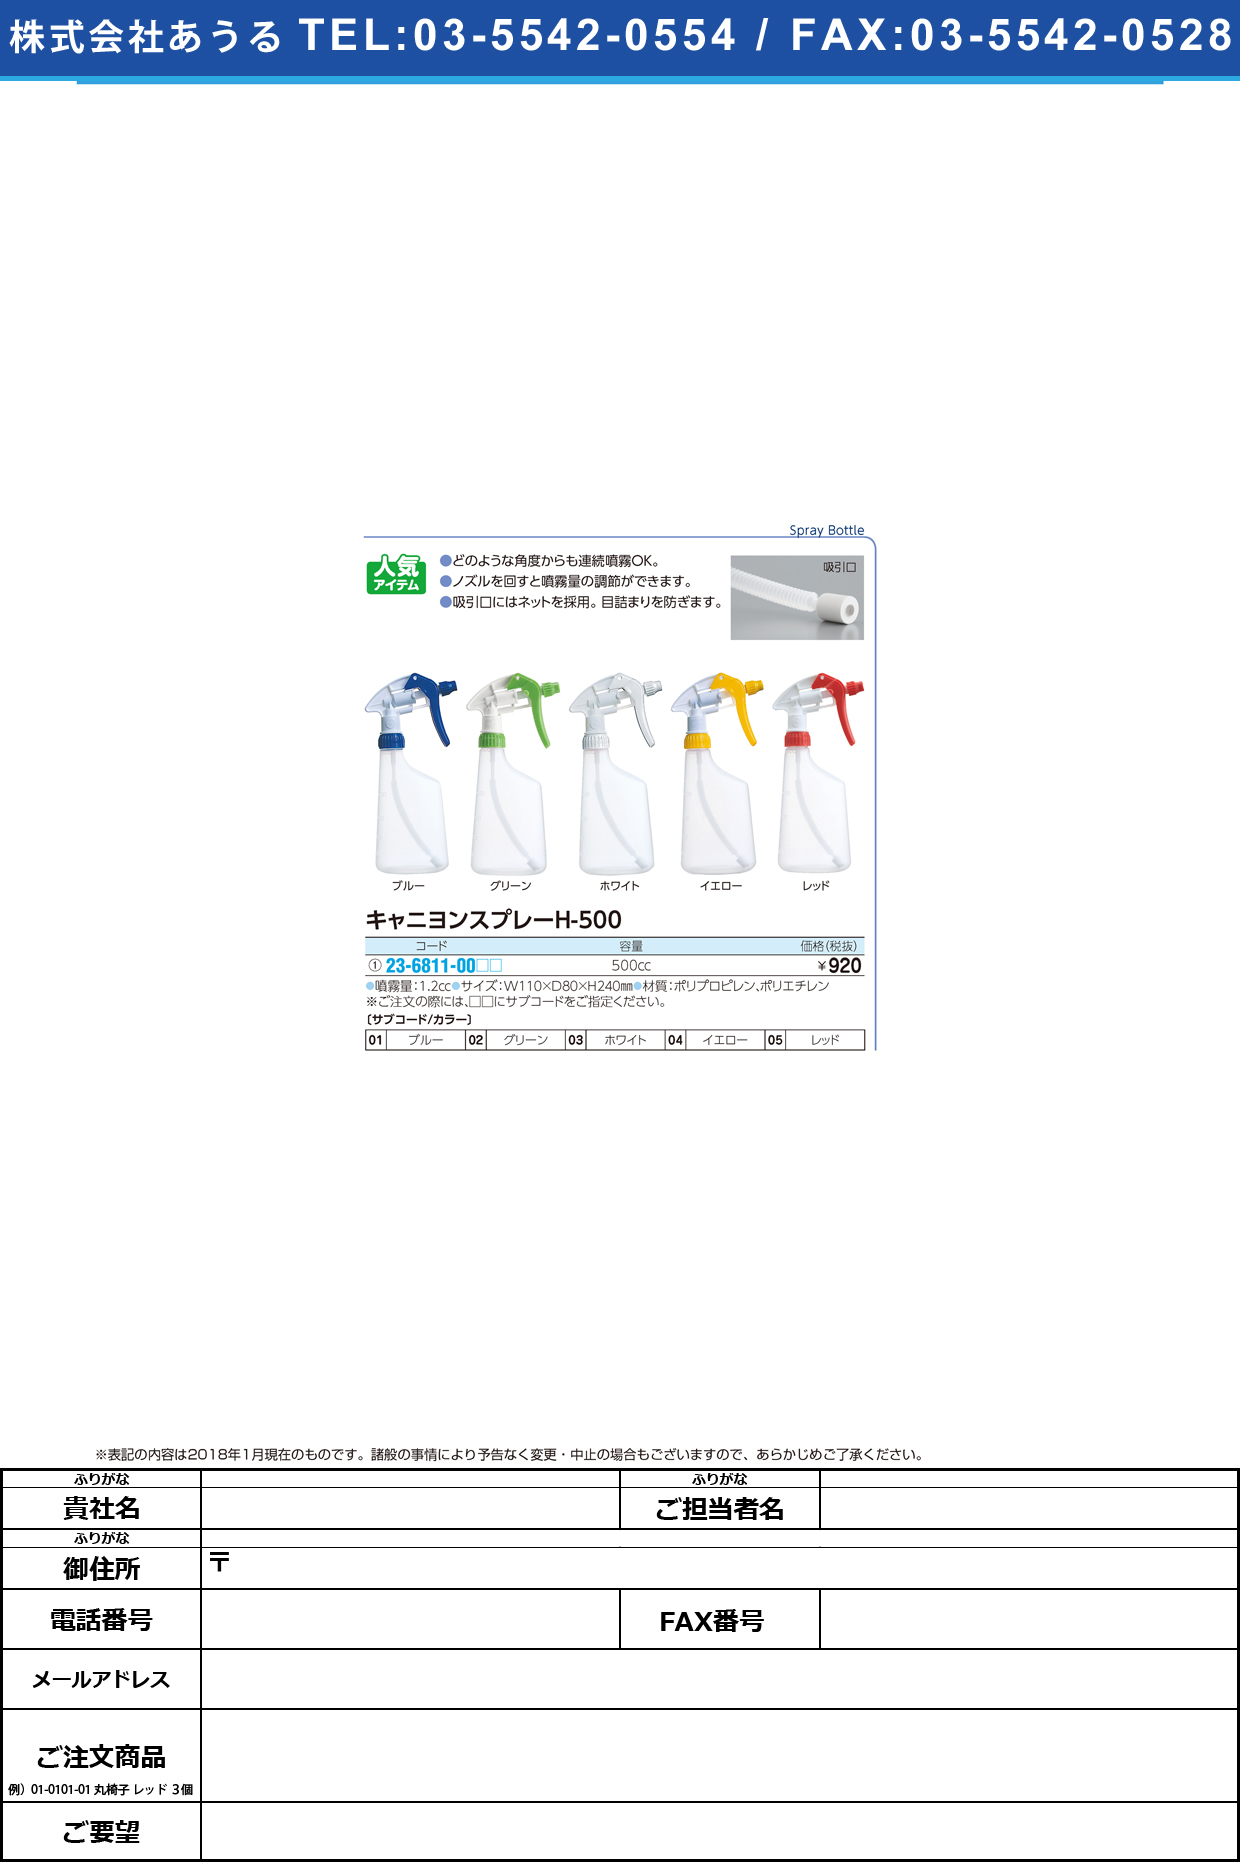 (23-6811-00)キャニヨンスプレー H-500(500CC) ｷｬﾆﾖﾝｽﾌﾟﾚｰ レッド(山崎産業)【1個単位】【2019年カタログ商品】